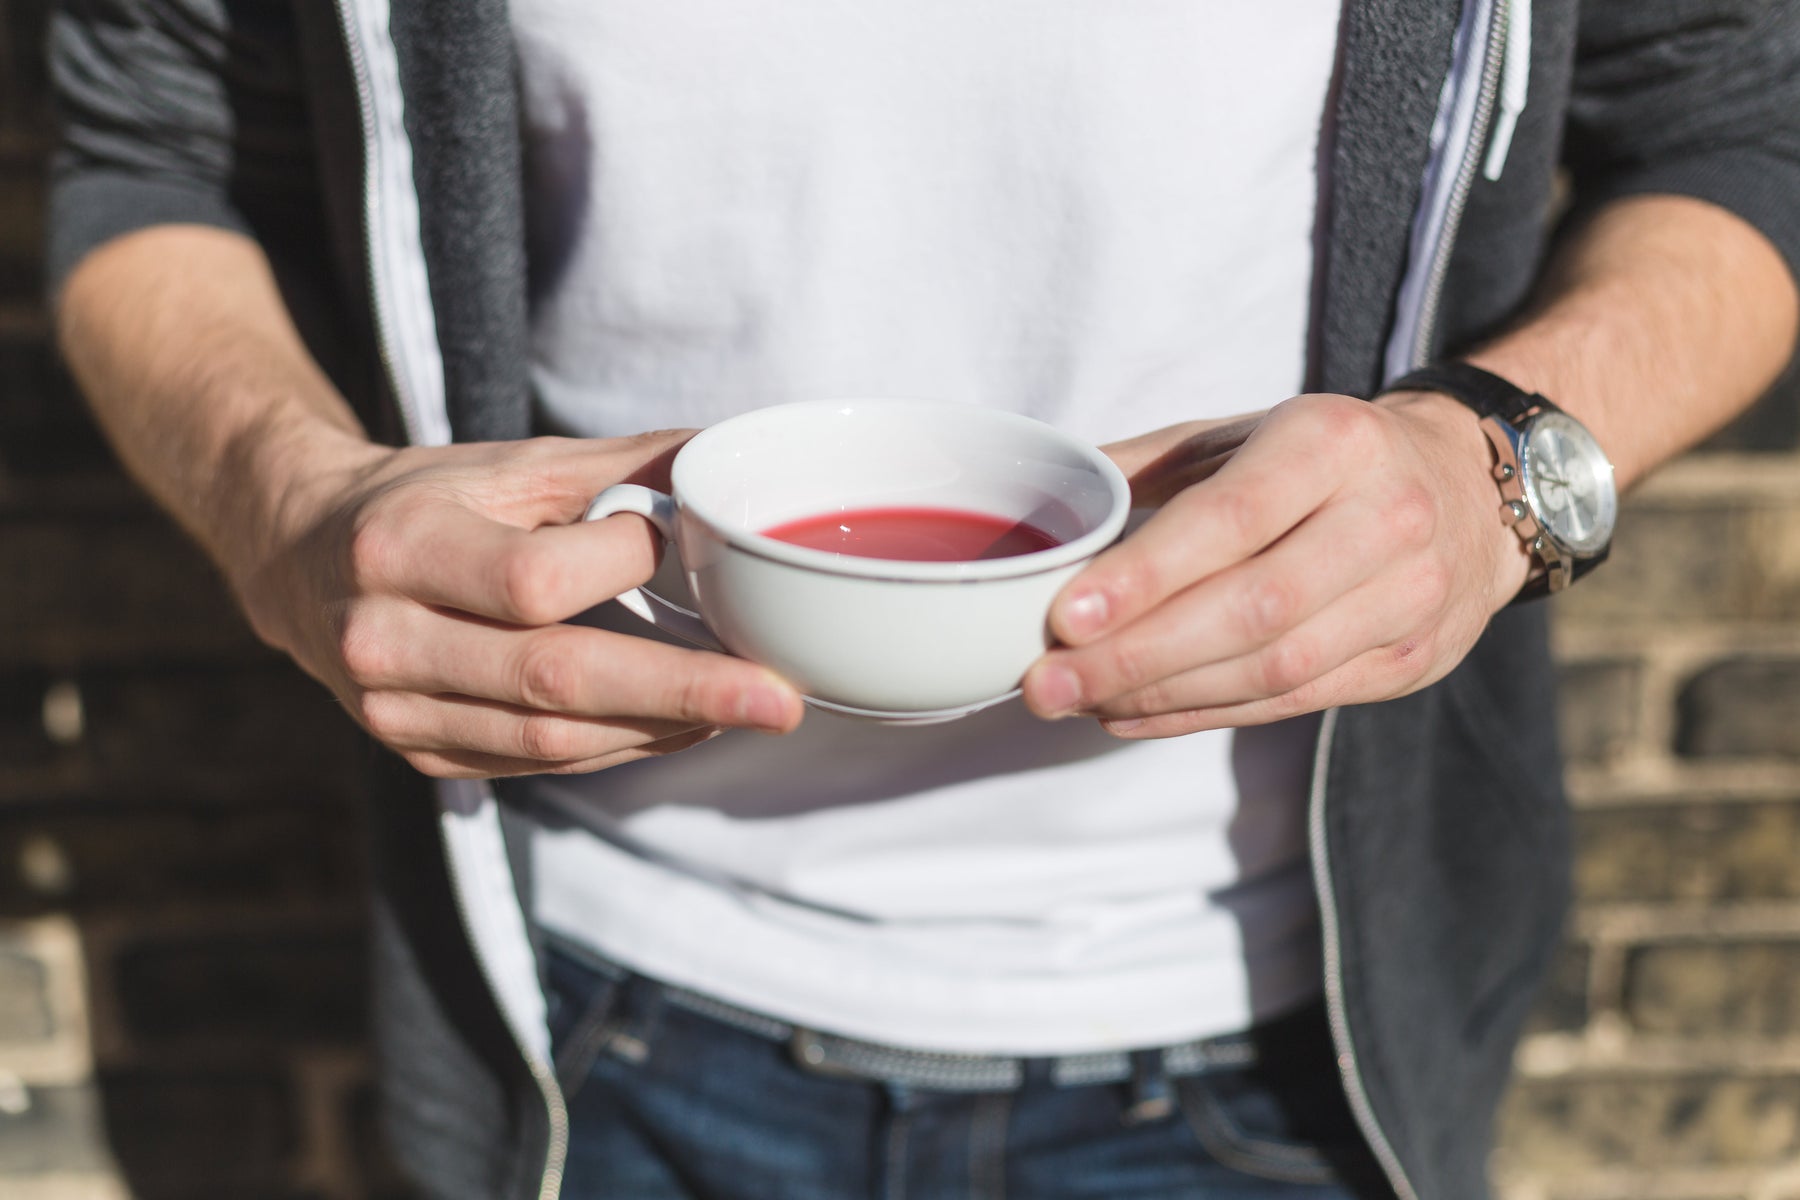 Cup of hibiscus tea in a man's hands.